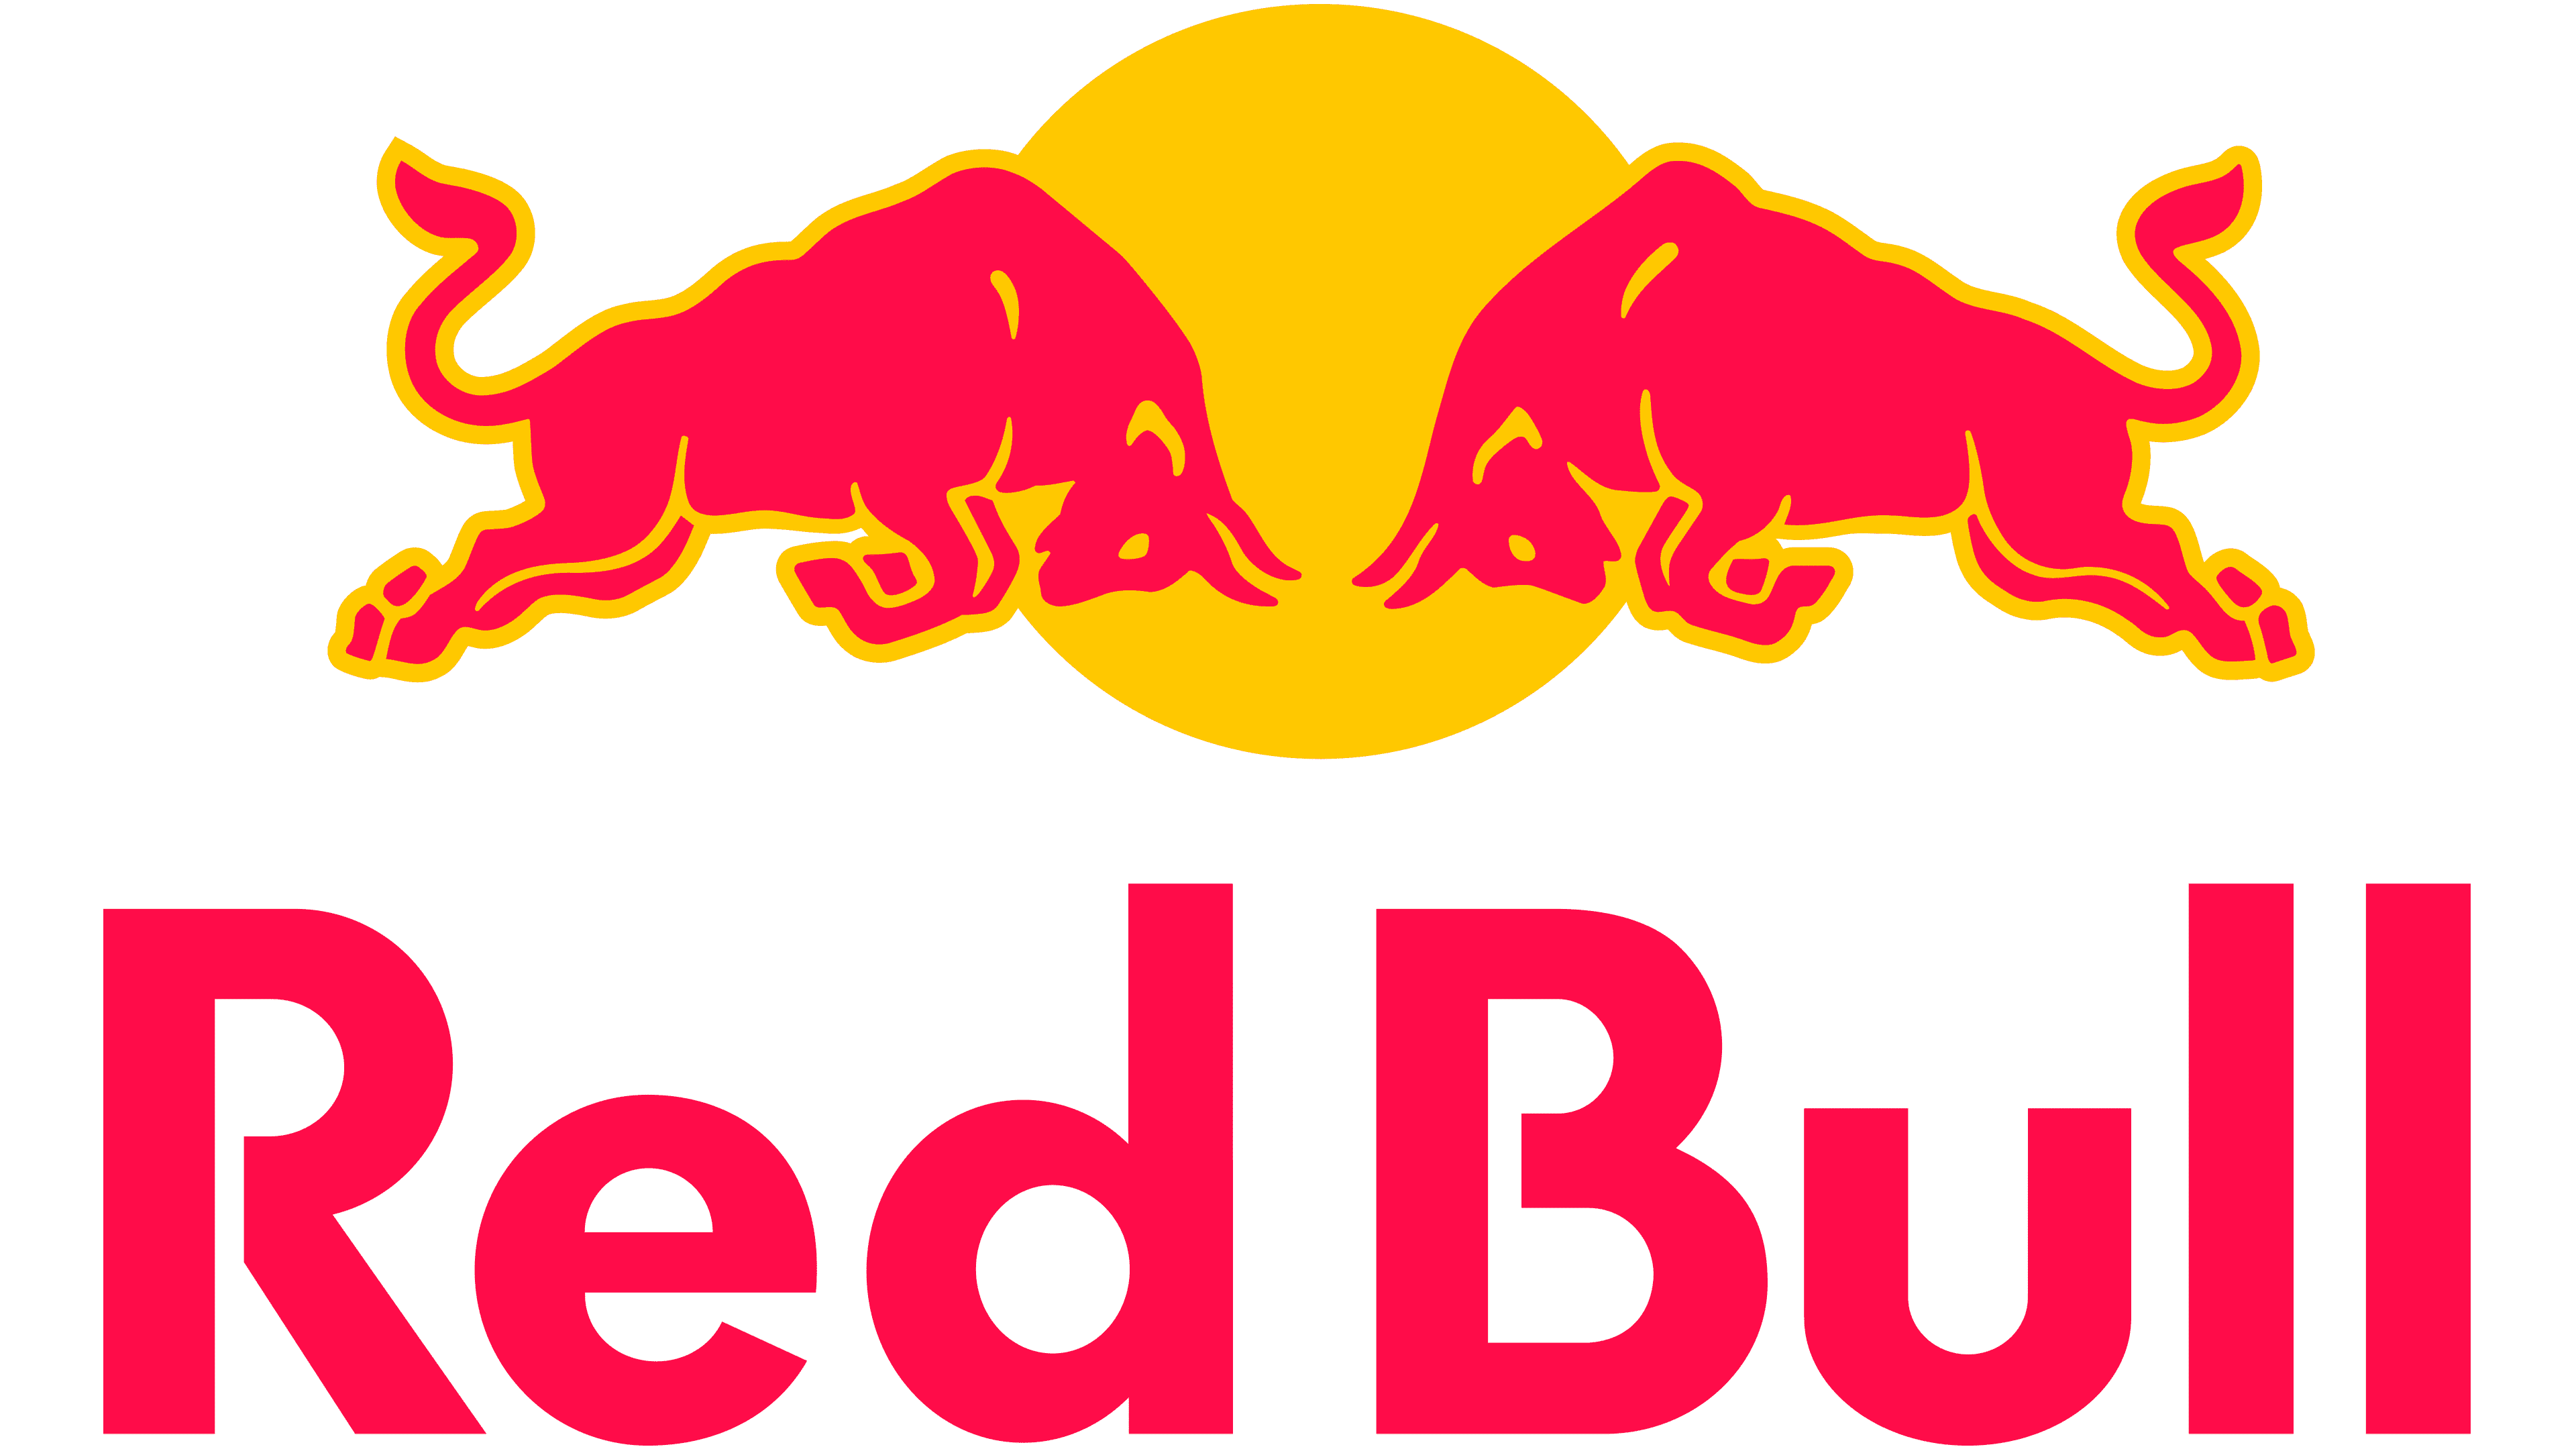 RedBull - Wprowadzenie produktu na rynek przez social media